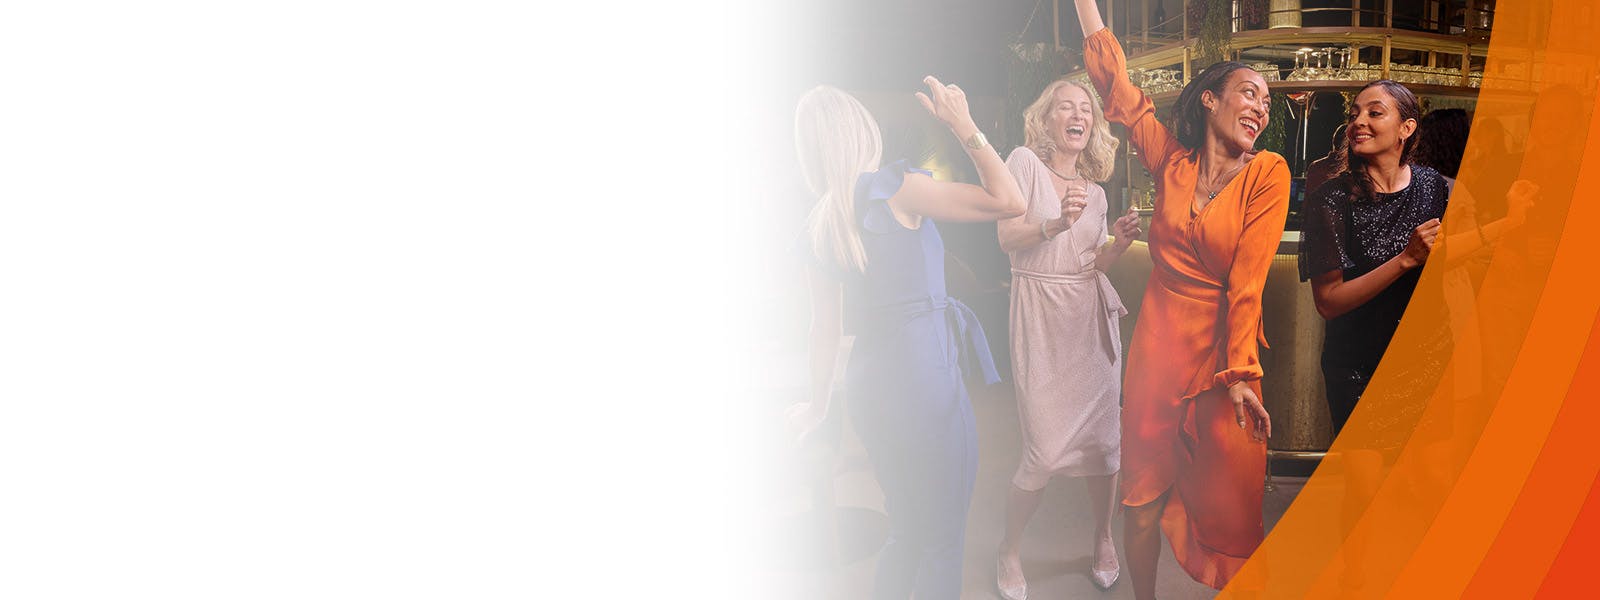 Image de quatre femmes qui dansent dans un bar. Texte : "Ce n'est pas seulement du mouvement, c'est la soirée des dames"